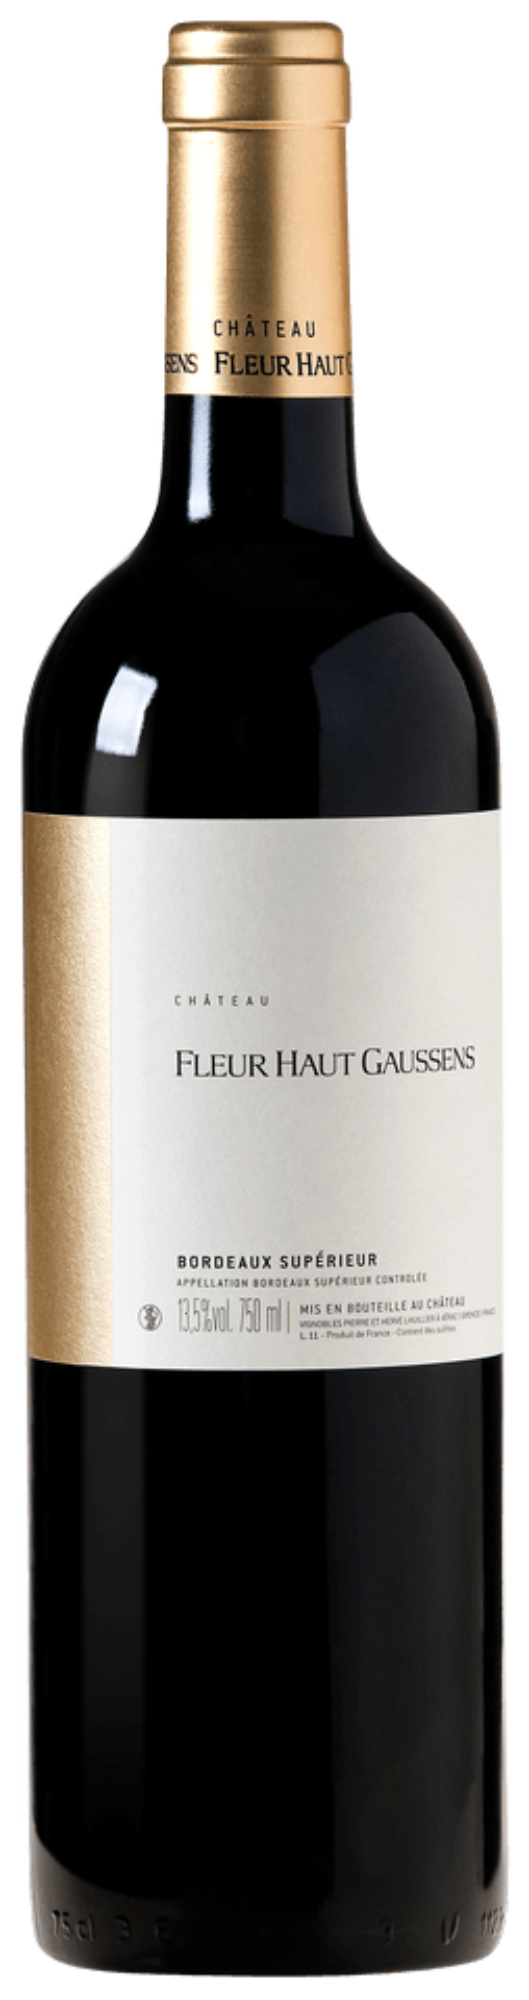 Château Fleur Haut Gaussens Bordeaux Supérieur 2020